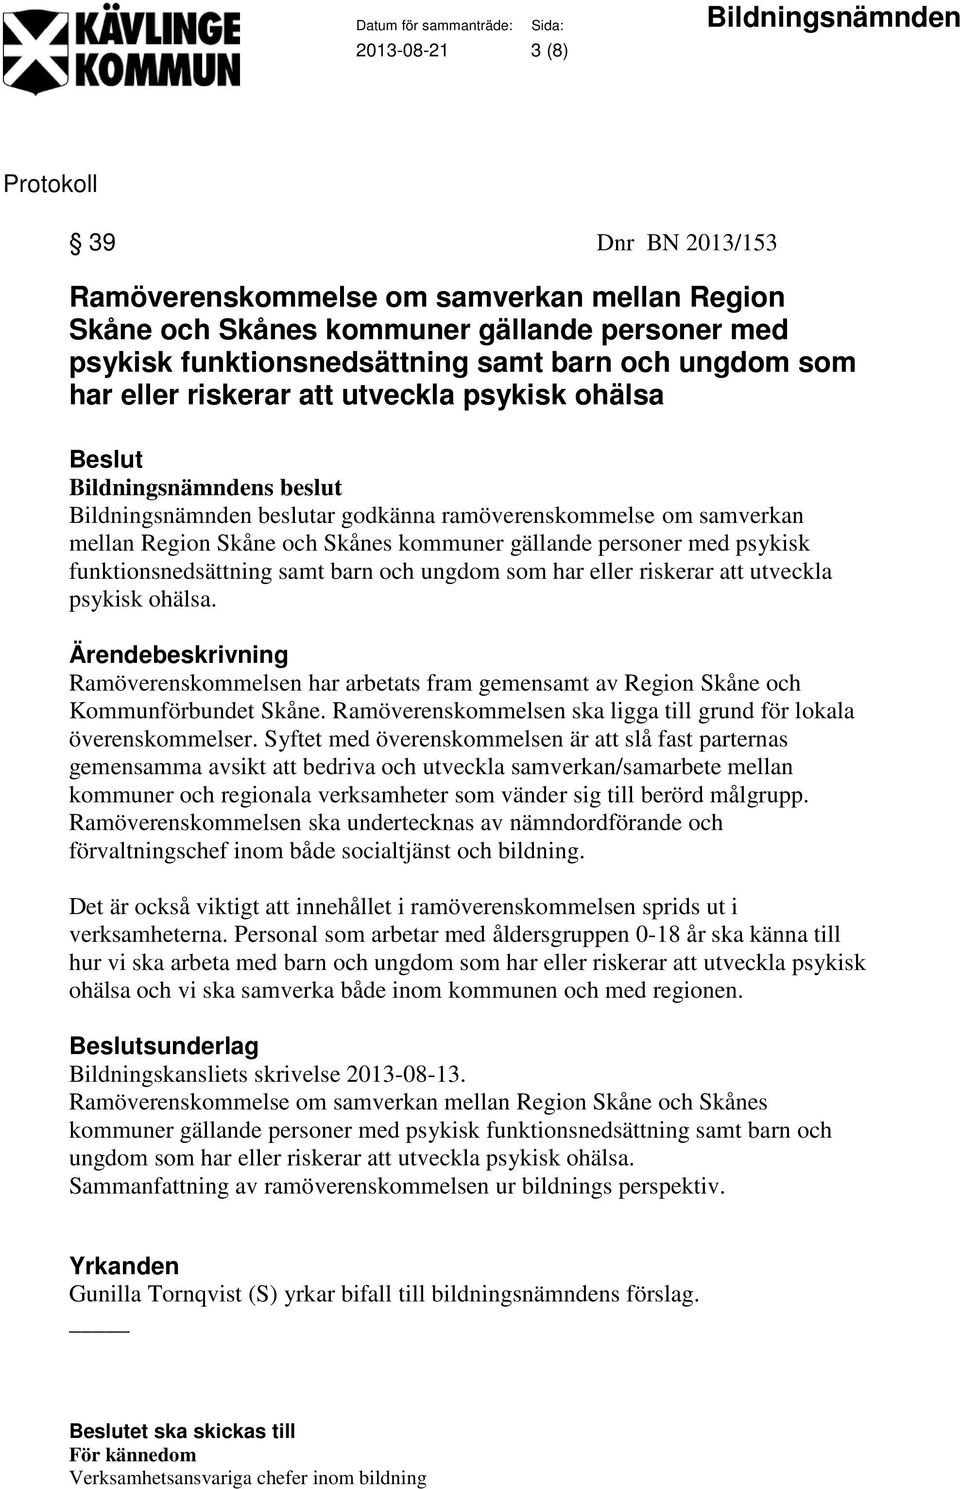 barn och ungdom som har eller riskerar att utveckla psykisk ohälsa. Ramöverenskommelsen har arbetats fram gemensamt av Region Skåne och Kommunförbundet Skåne.